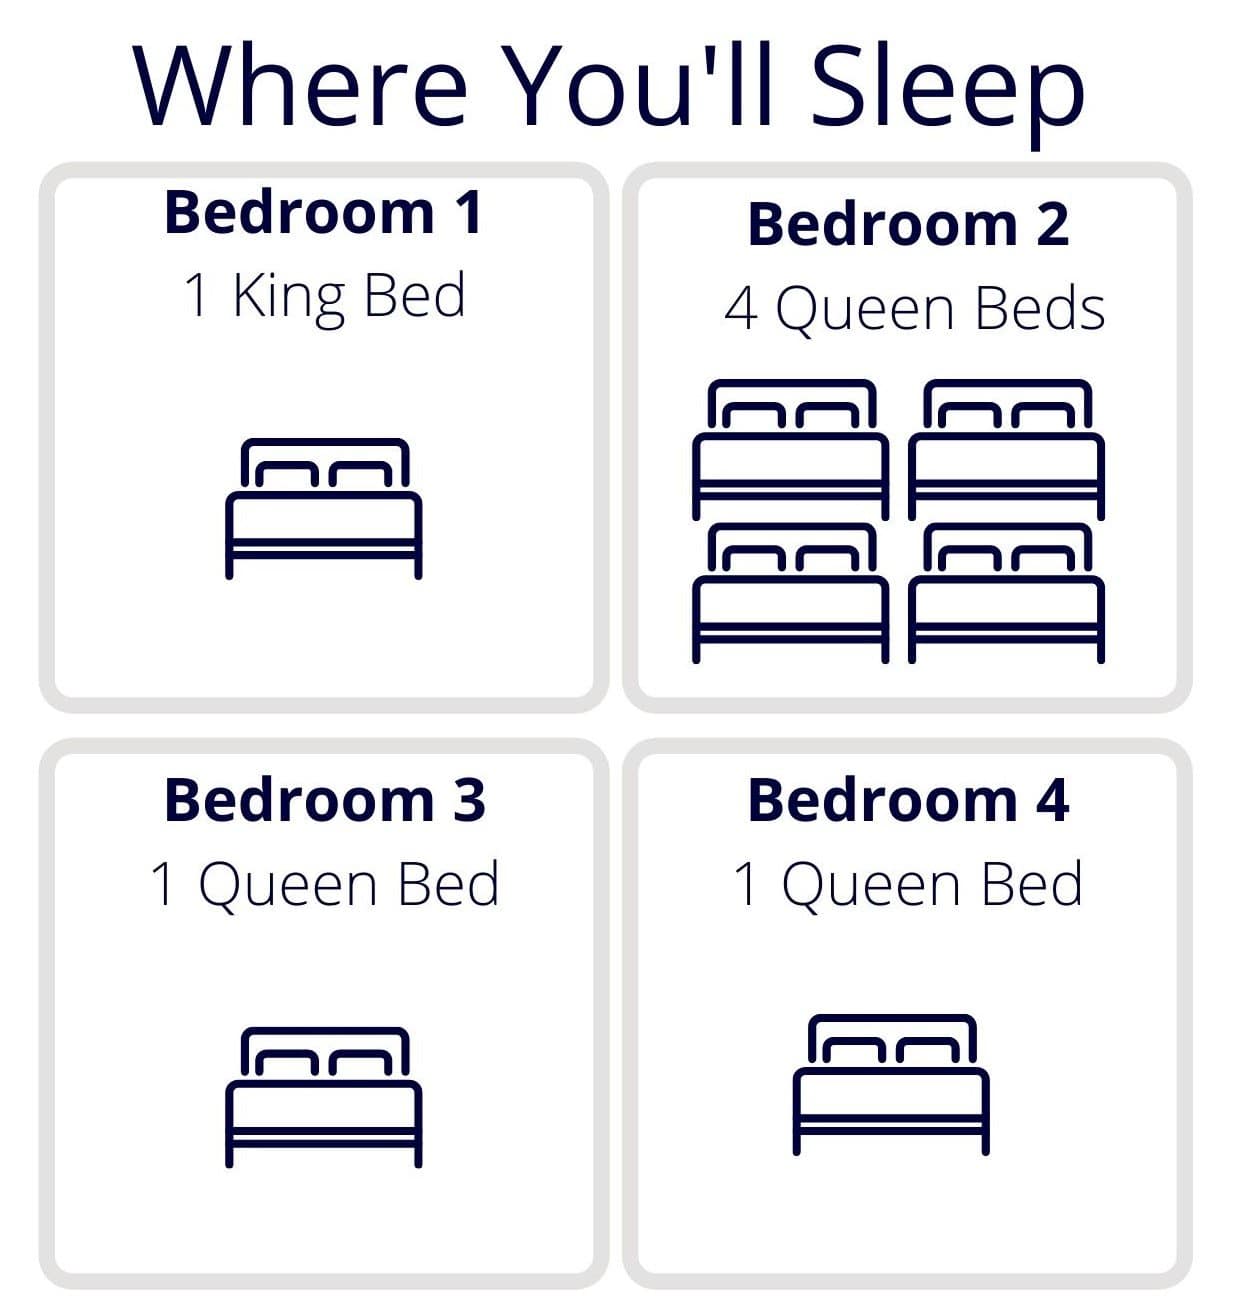 Sleeping arrangement infographic - 1 king bed and 6 queen beds